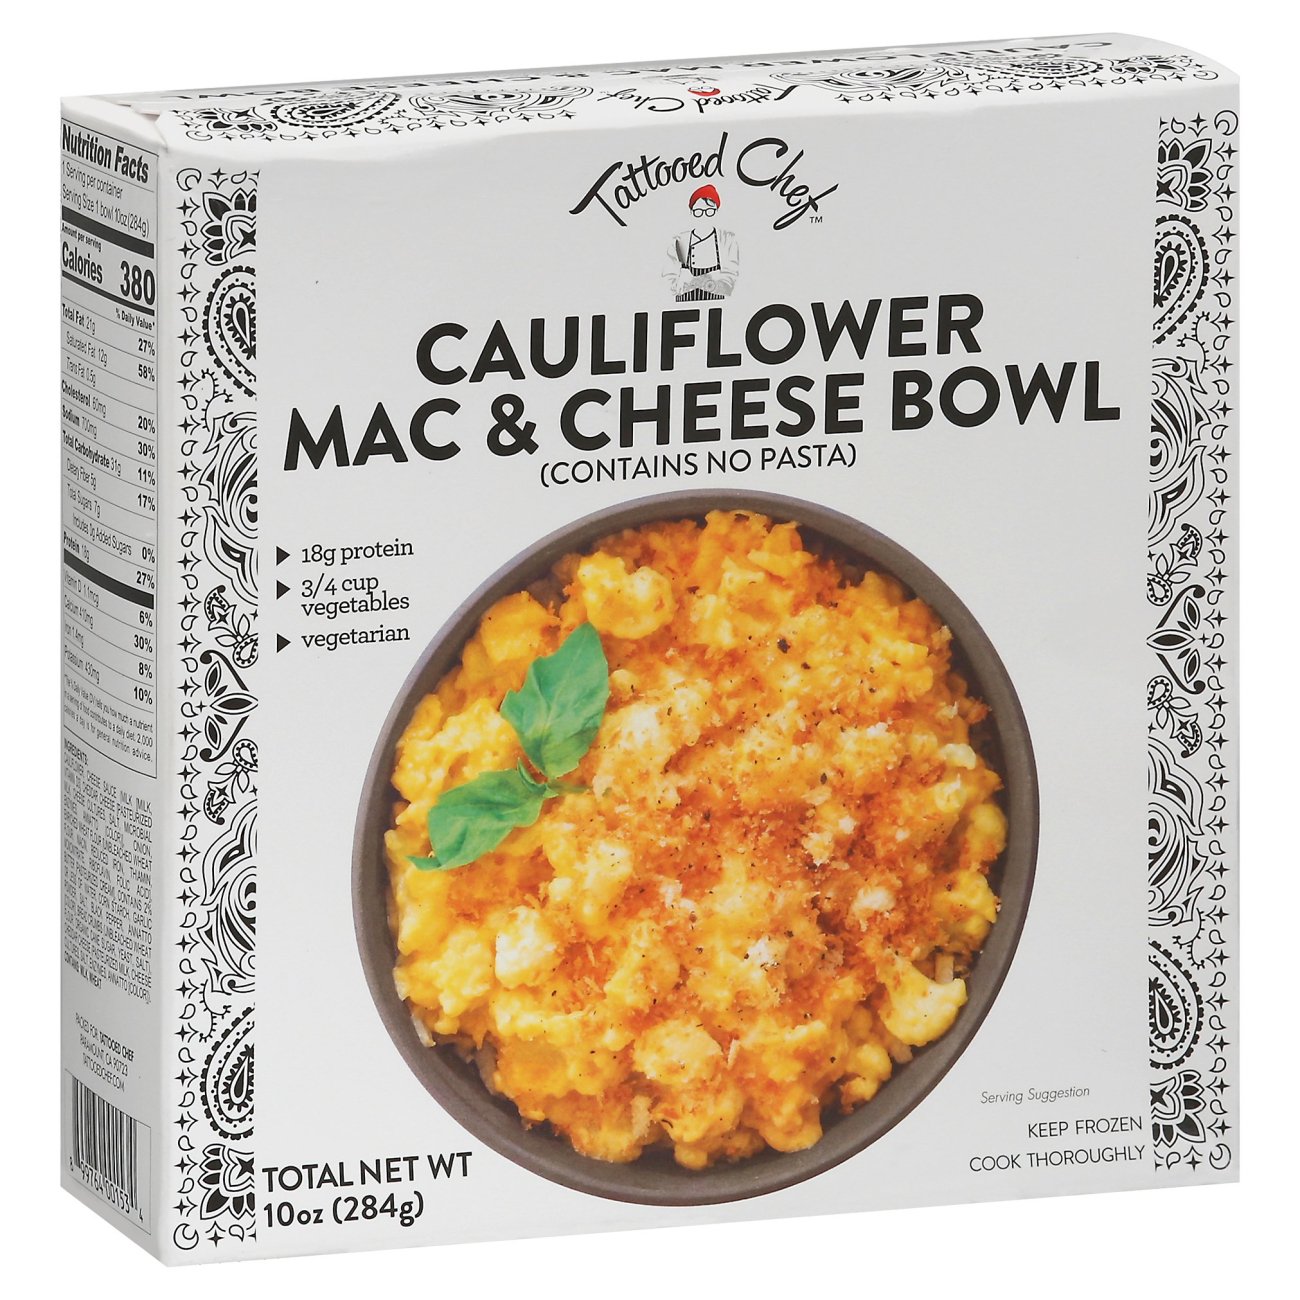 Tattooed Chef Cauliflower Mac & Cheese Bowl - Shop Meals & Sides at H-E-B